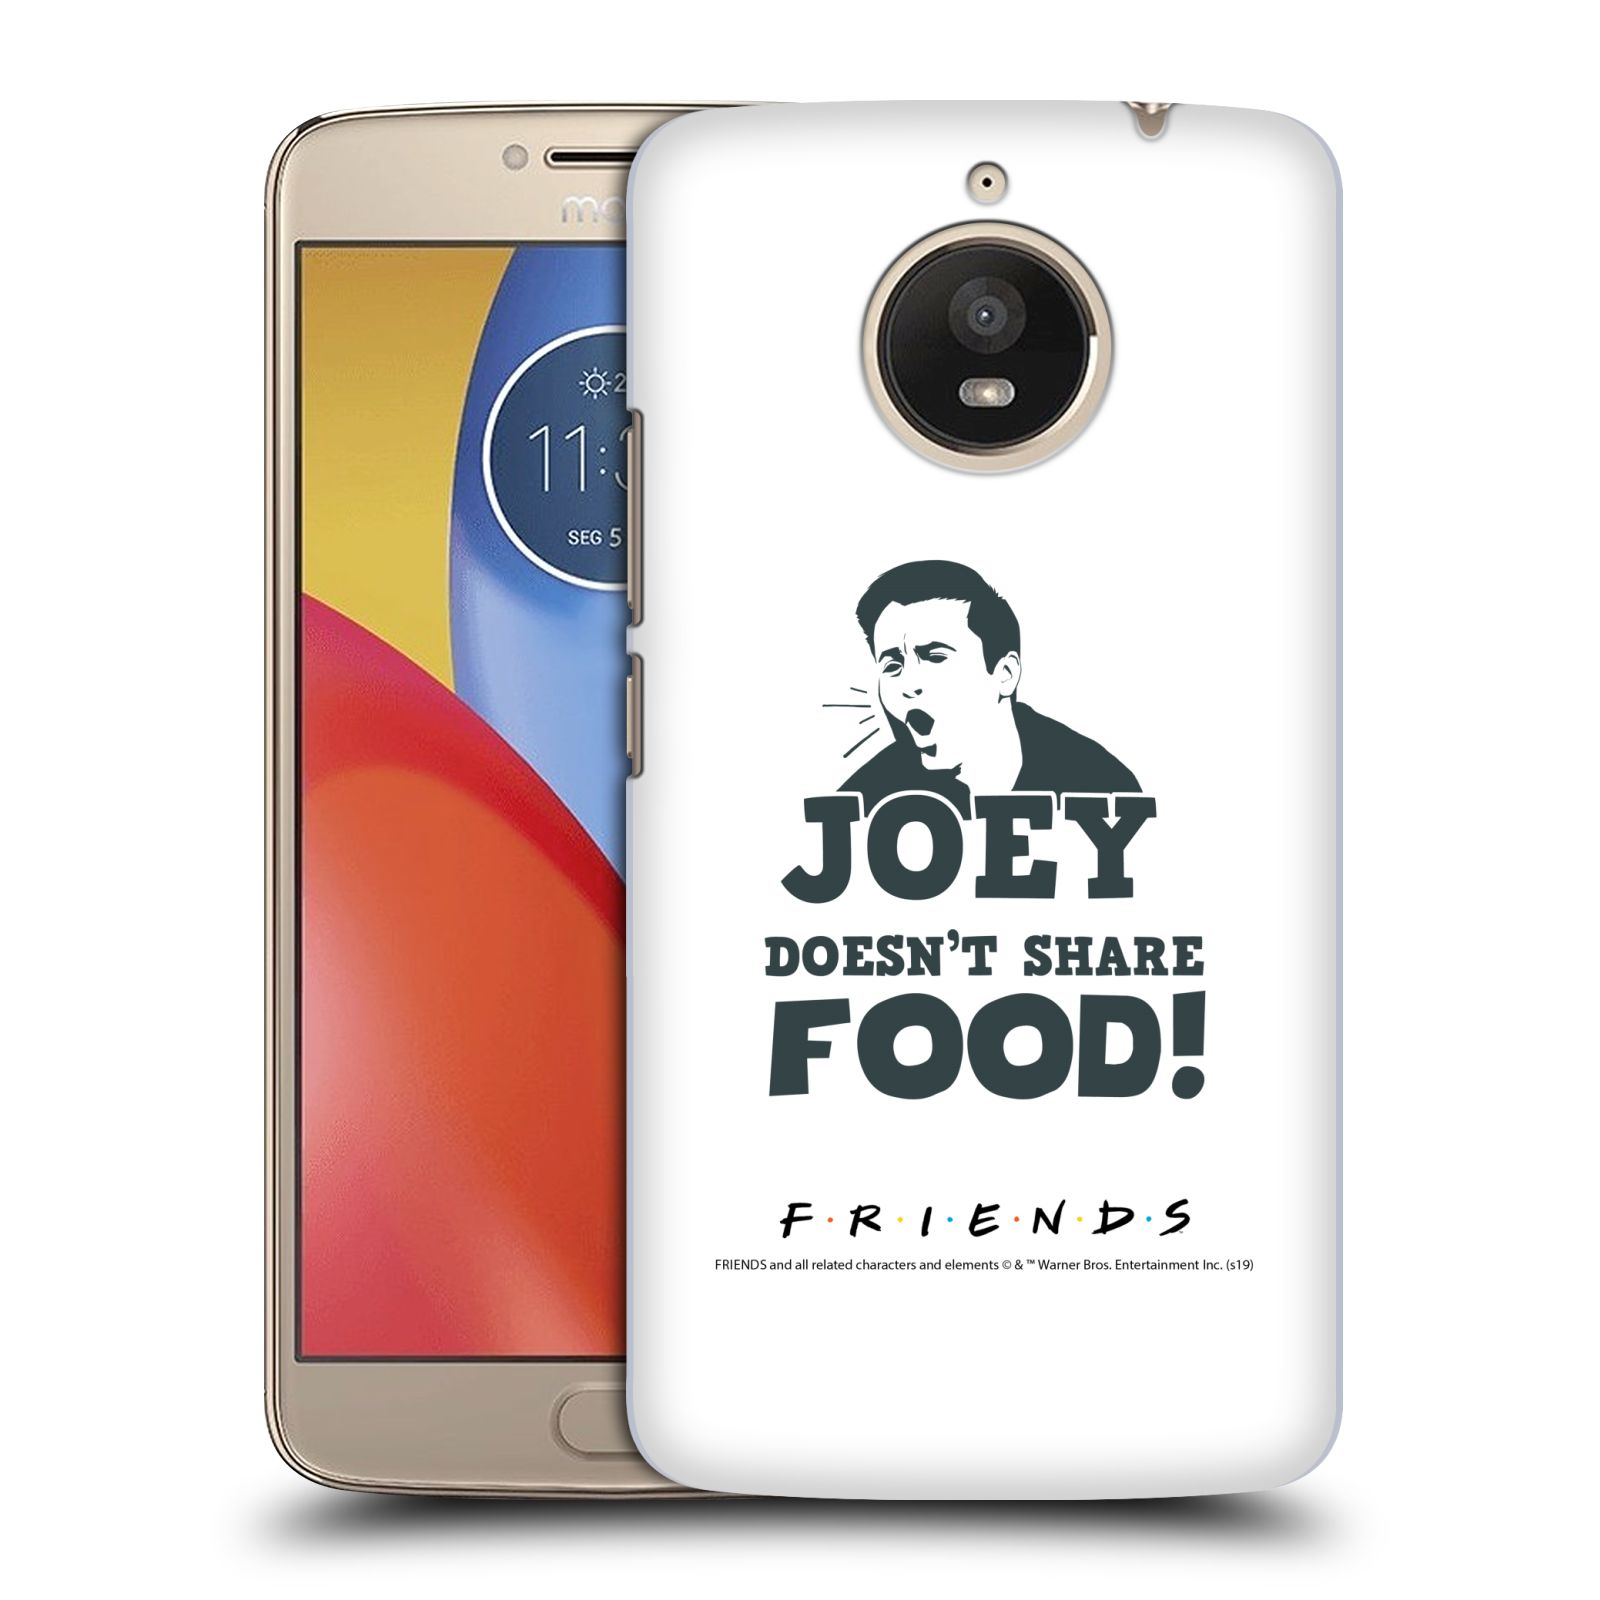 Pouzdro na mobil Lenovo Moto E4 PLUS - HEAD CASE - Seriál Přátelé - Joey se o jídlo nedělí